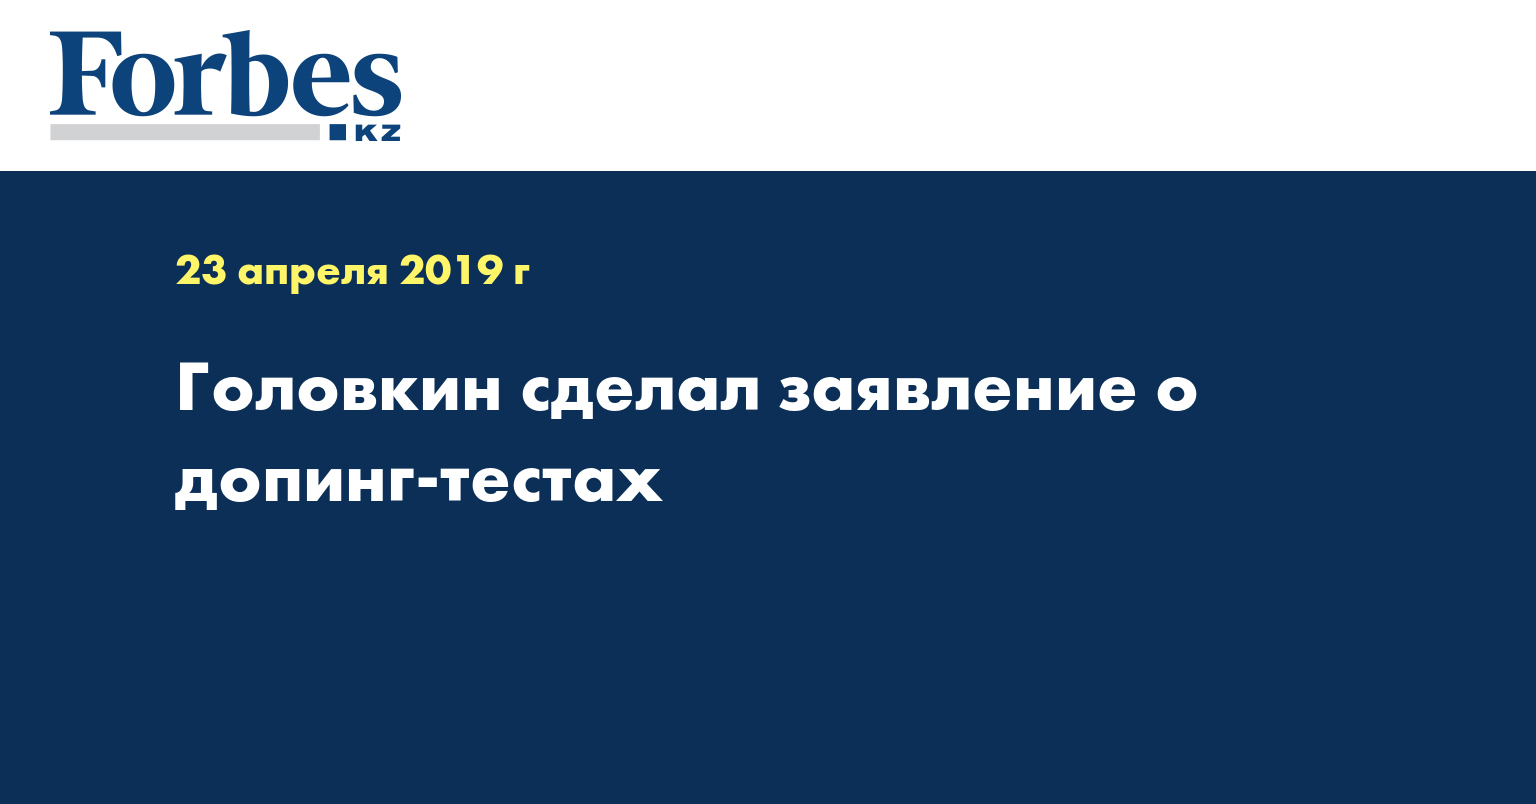 Головкин сделал заявление о допинг-тестах 